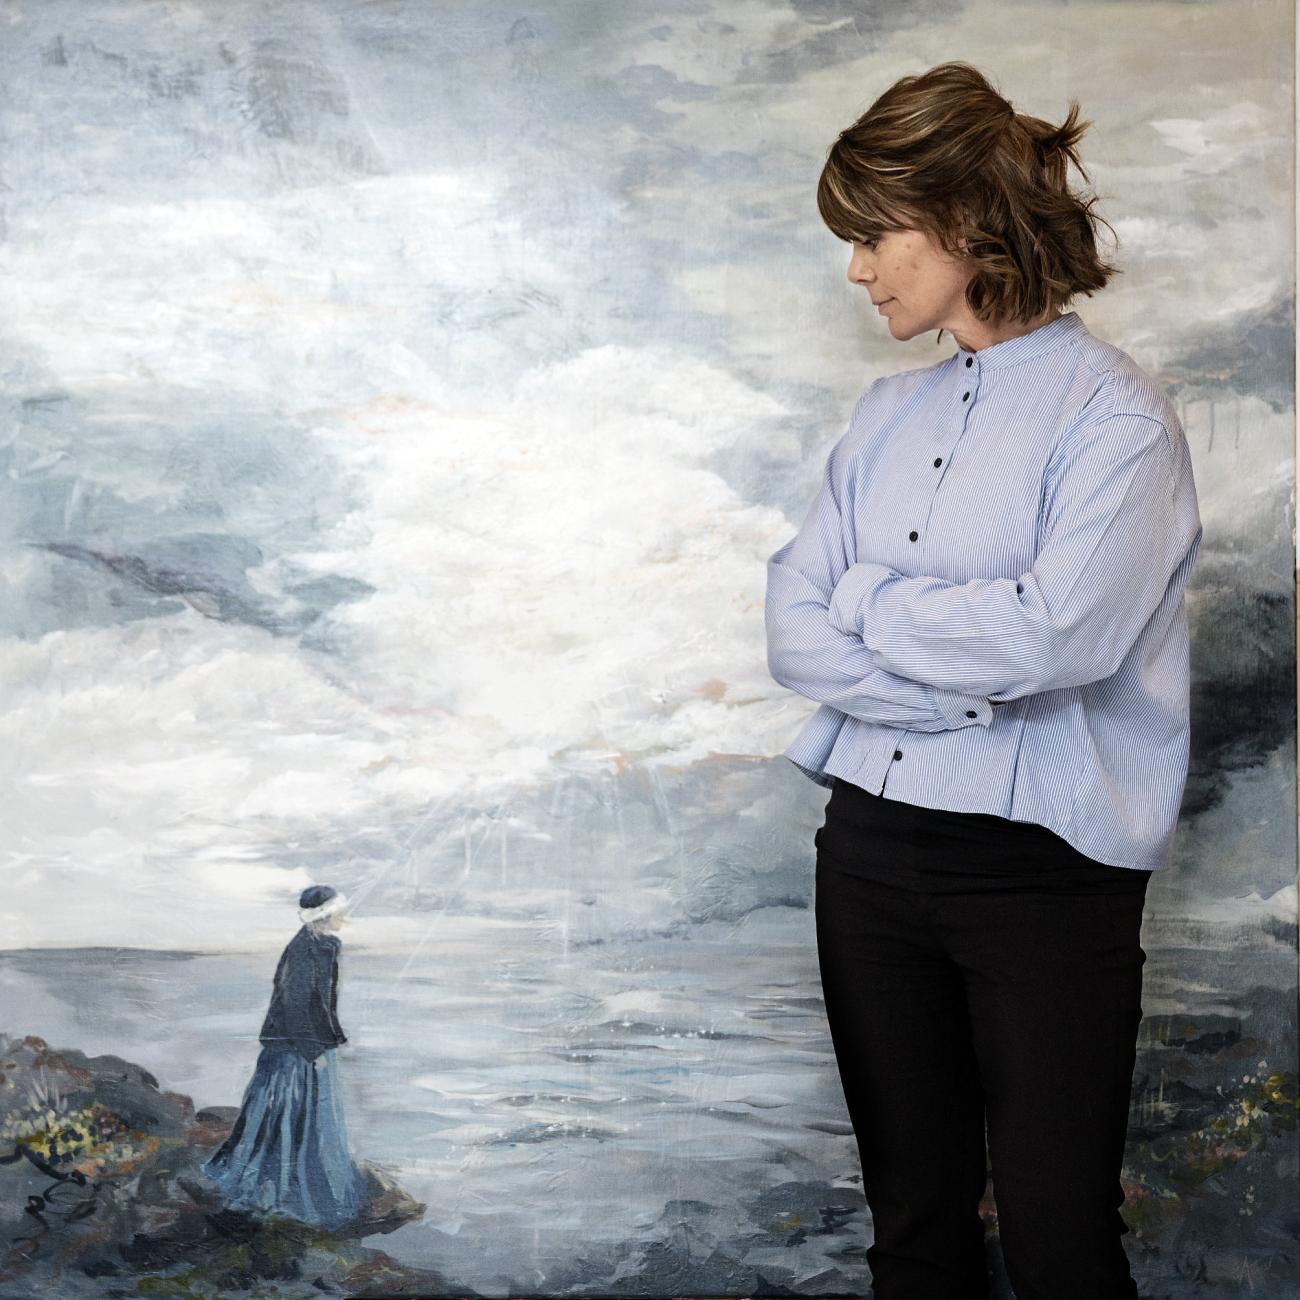 Inspirerad av Stormskärs Maja och den nya filmen om henne har Anna Lind Bengtsson målat en svit tavlor som nu visas på stadsbiblioteket.